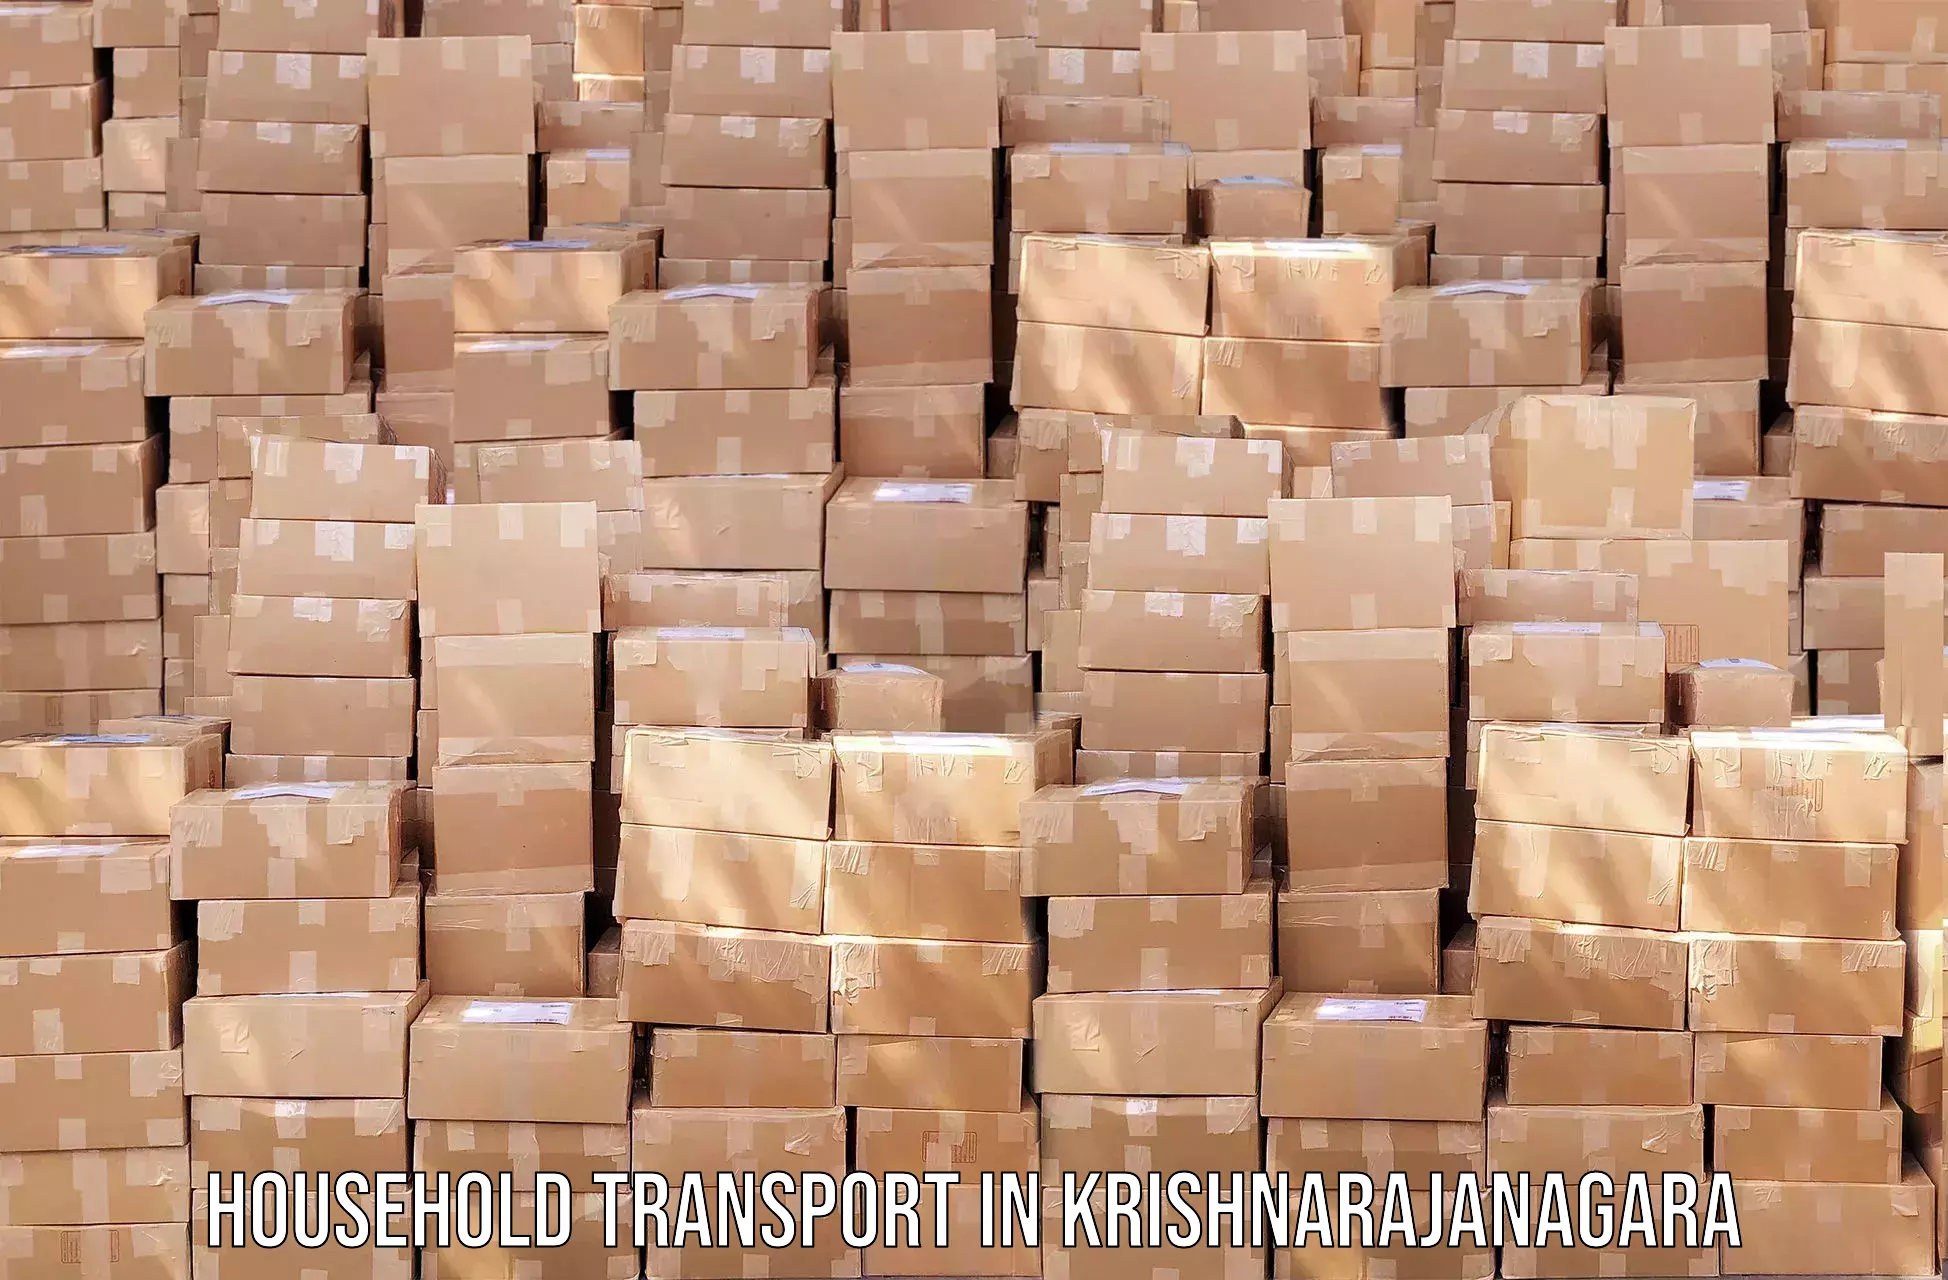 Home goods transportation in Krishnarajanagara